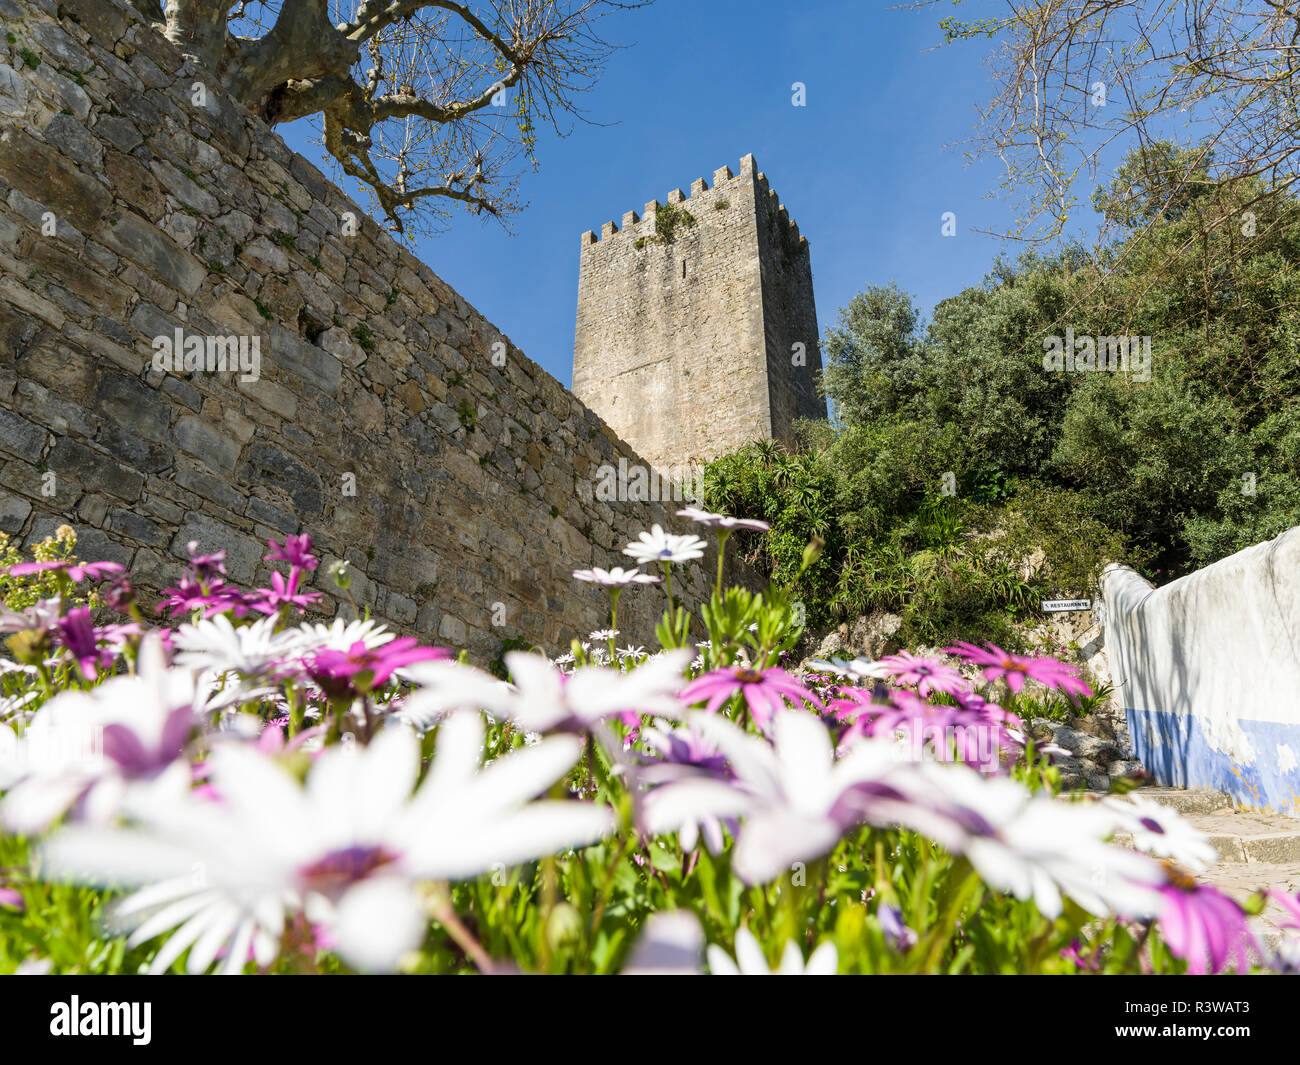 Die Burg. Historischen, mittelalterlichen Altstadt von Obidos, eine touristische Attraktion nördlich von Lissabon, Portugal Stockfoto